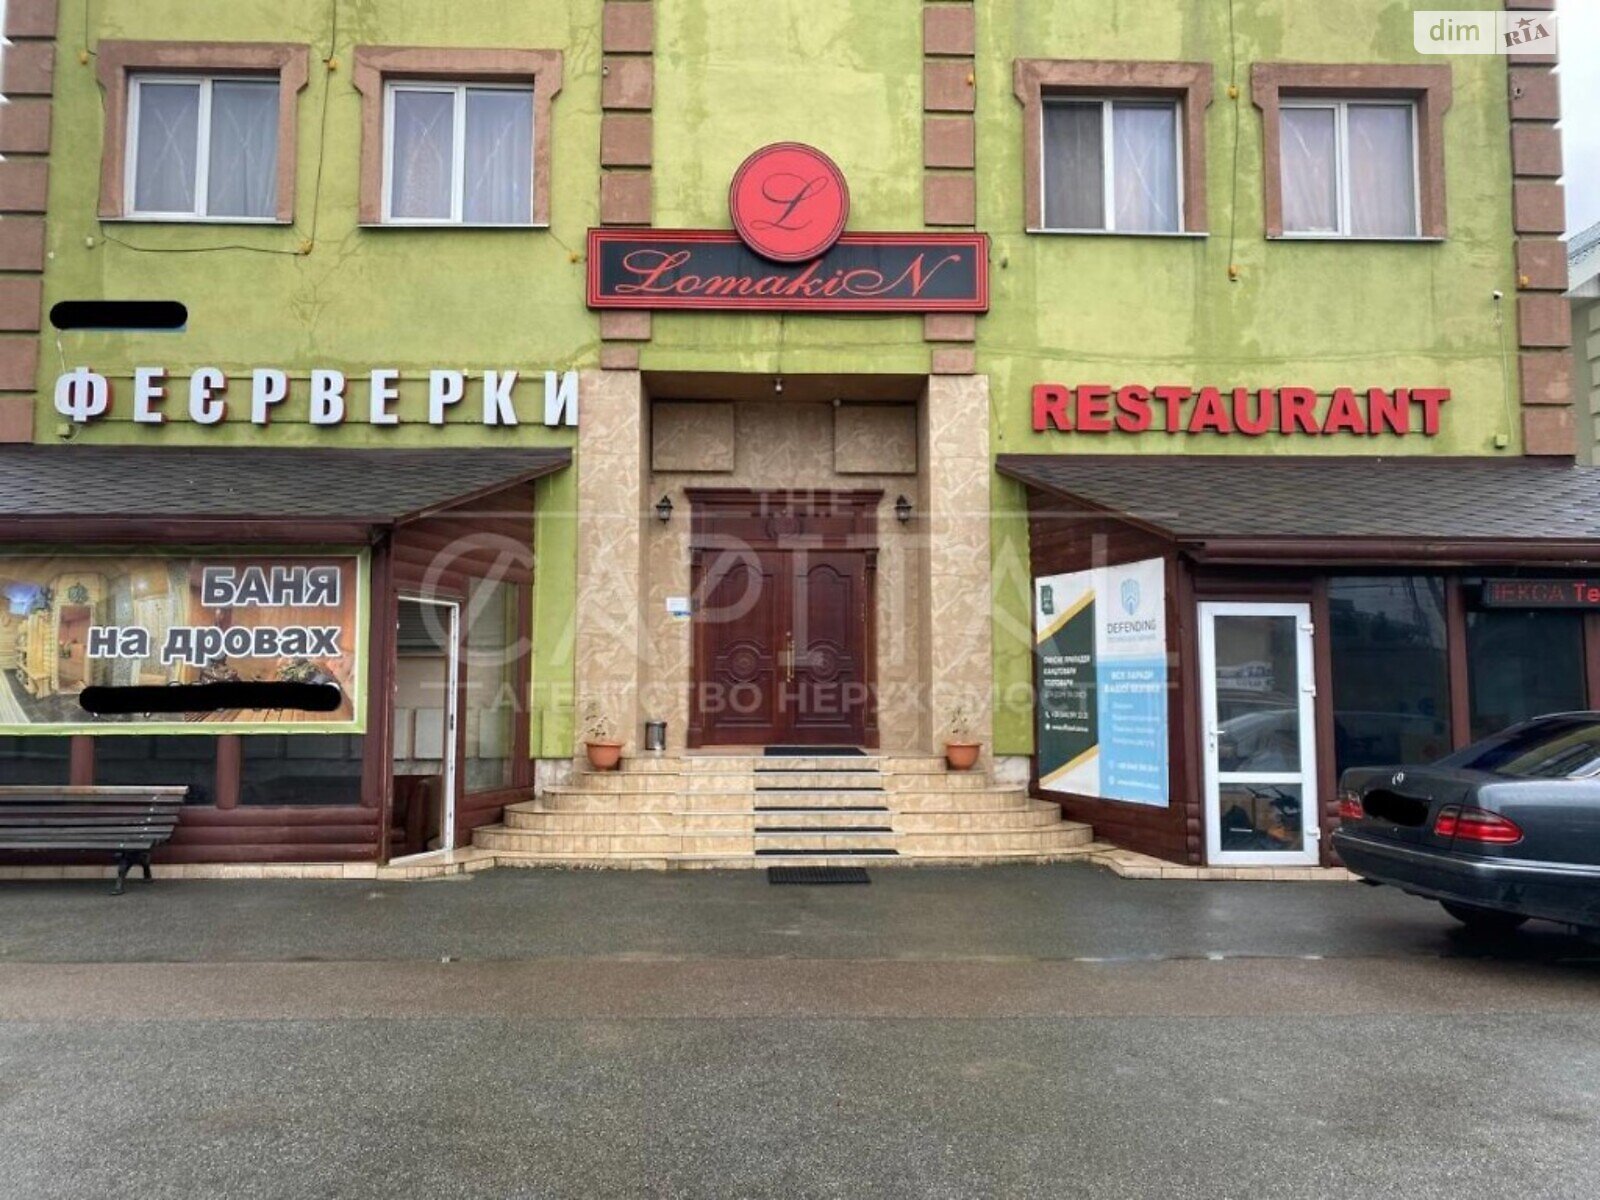 Коммерческое помещение в Киеве, продажа по Стеценко улица, район Святошинский, цена: 5 500 000 долларов за объект фото 1